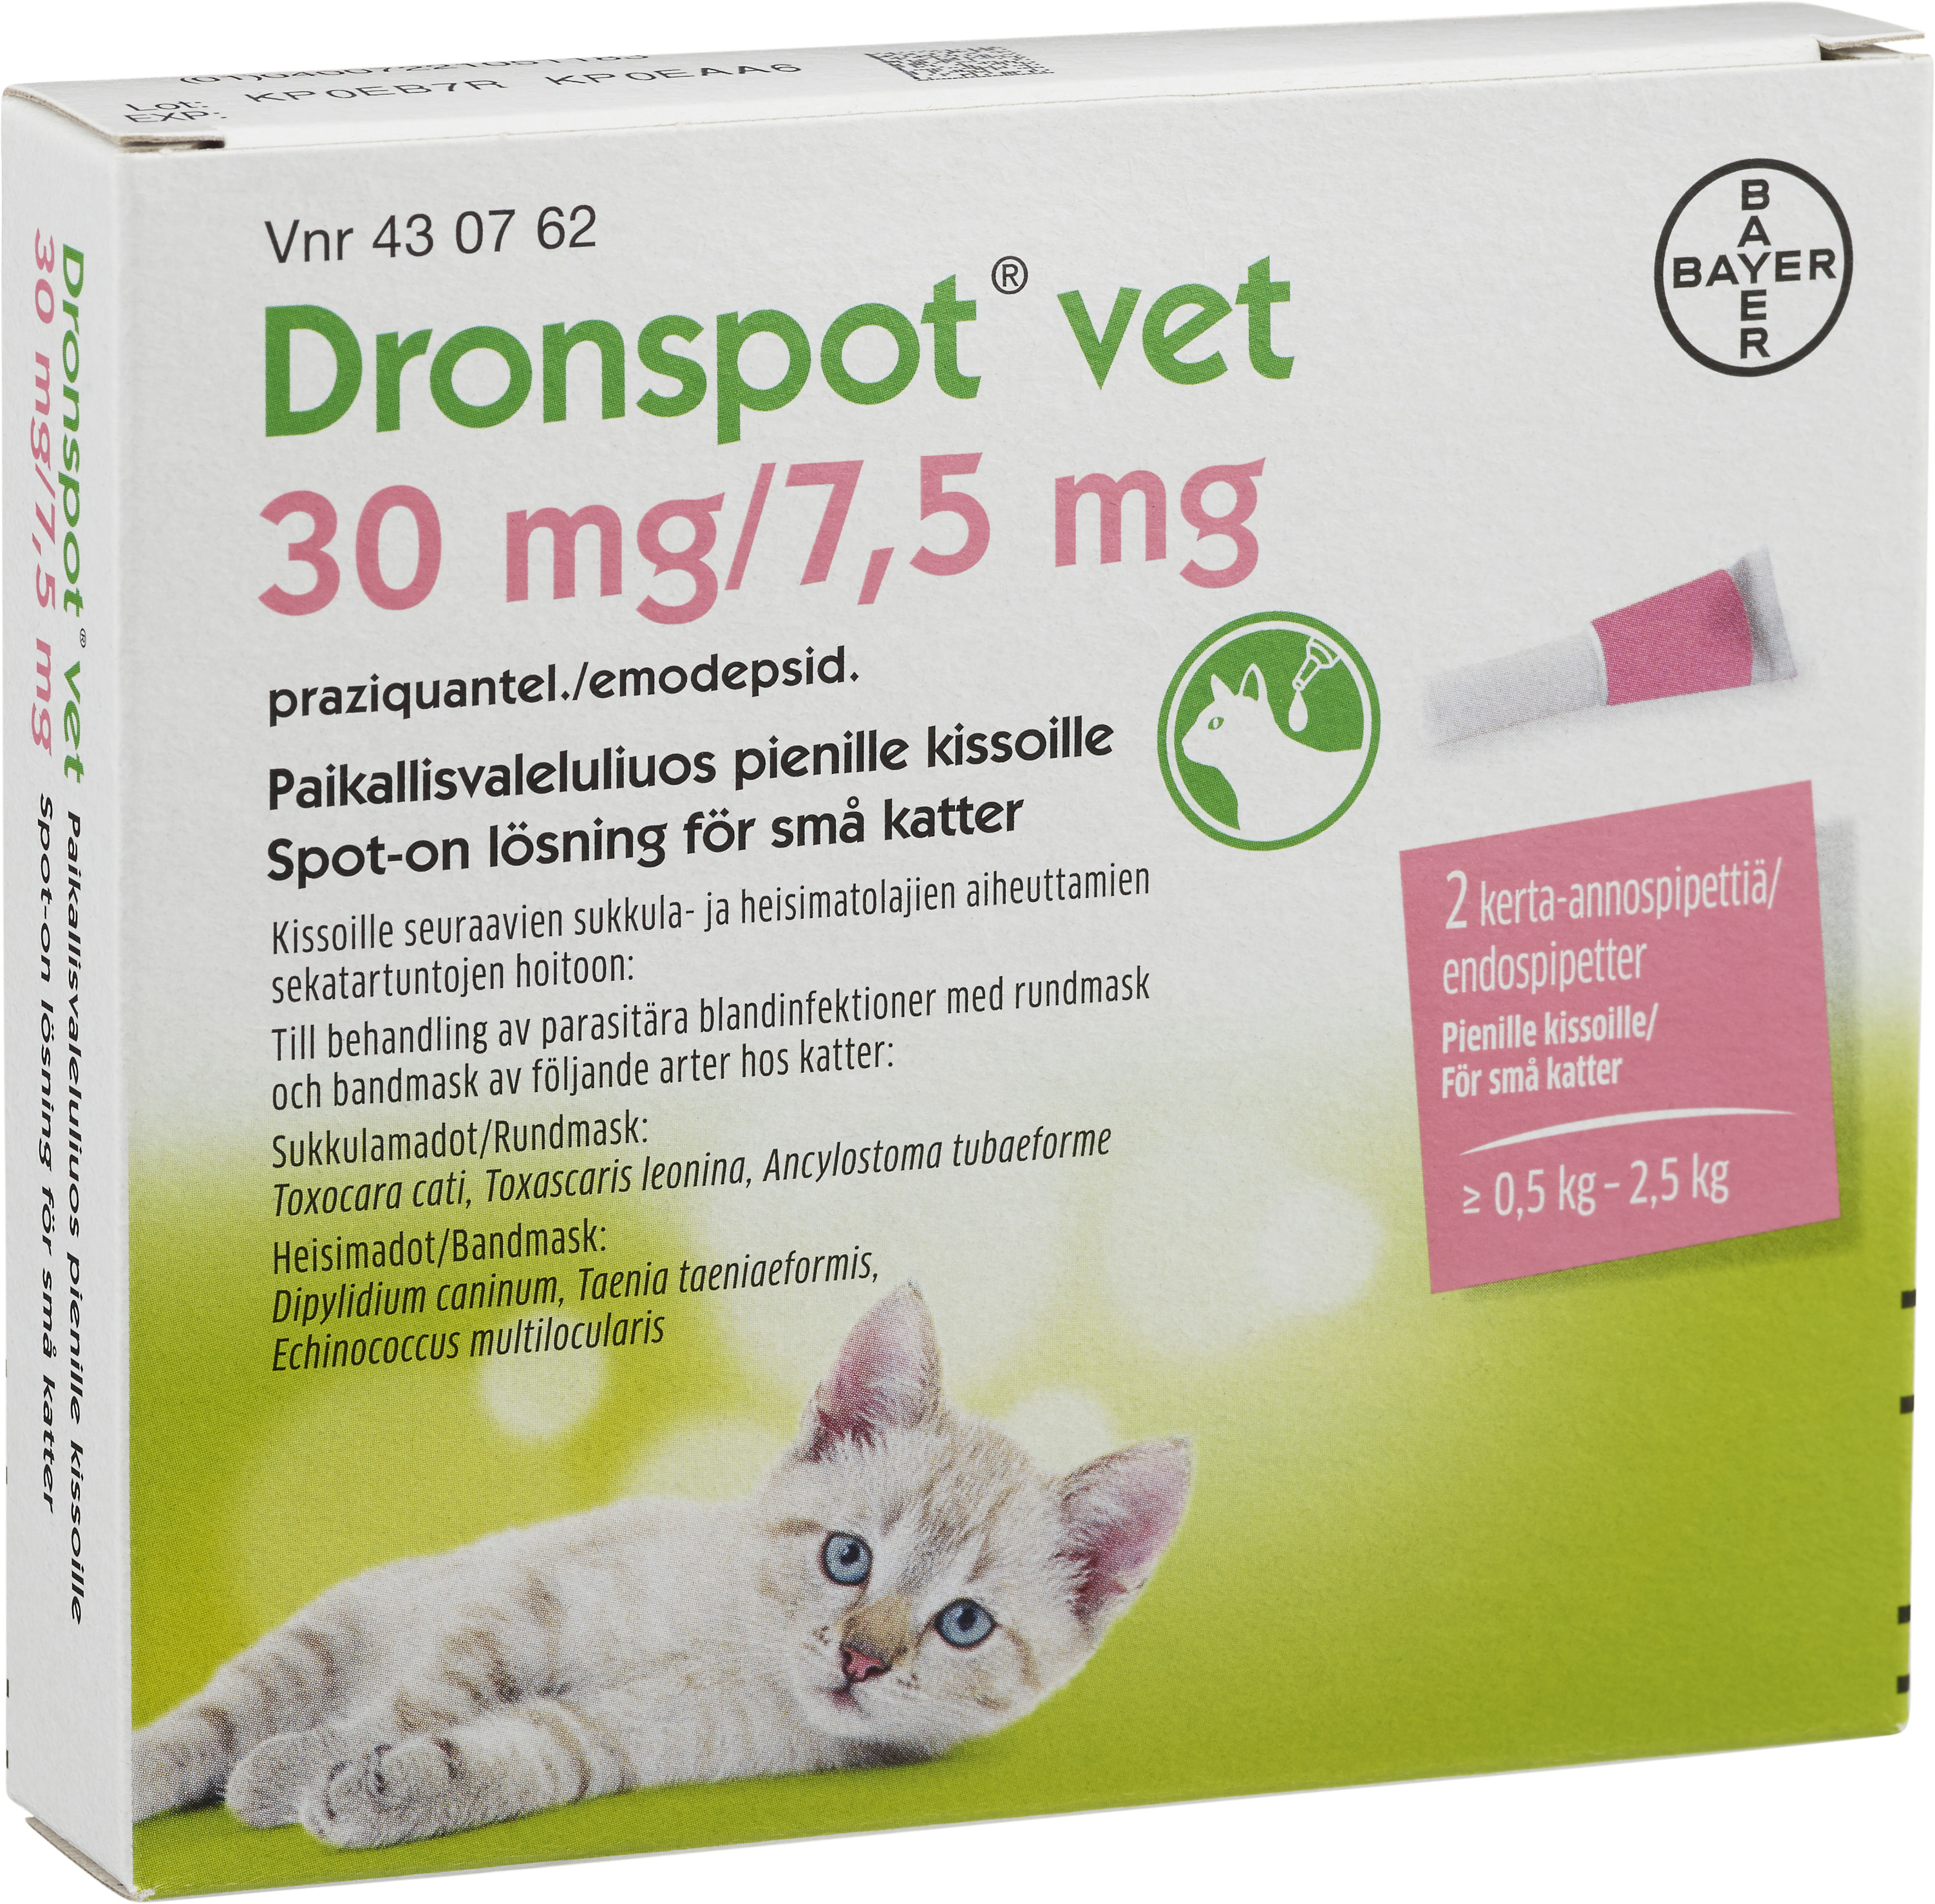 Köp Dronspot Vet 30 mg/ 7,5 mg Spot-on lösning för små katte Apohem